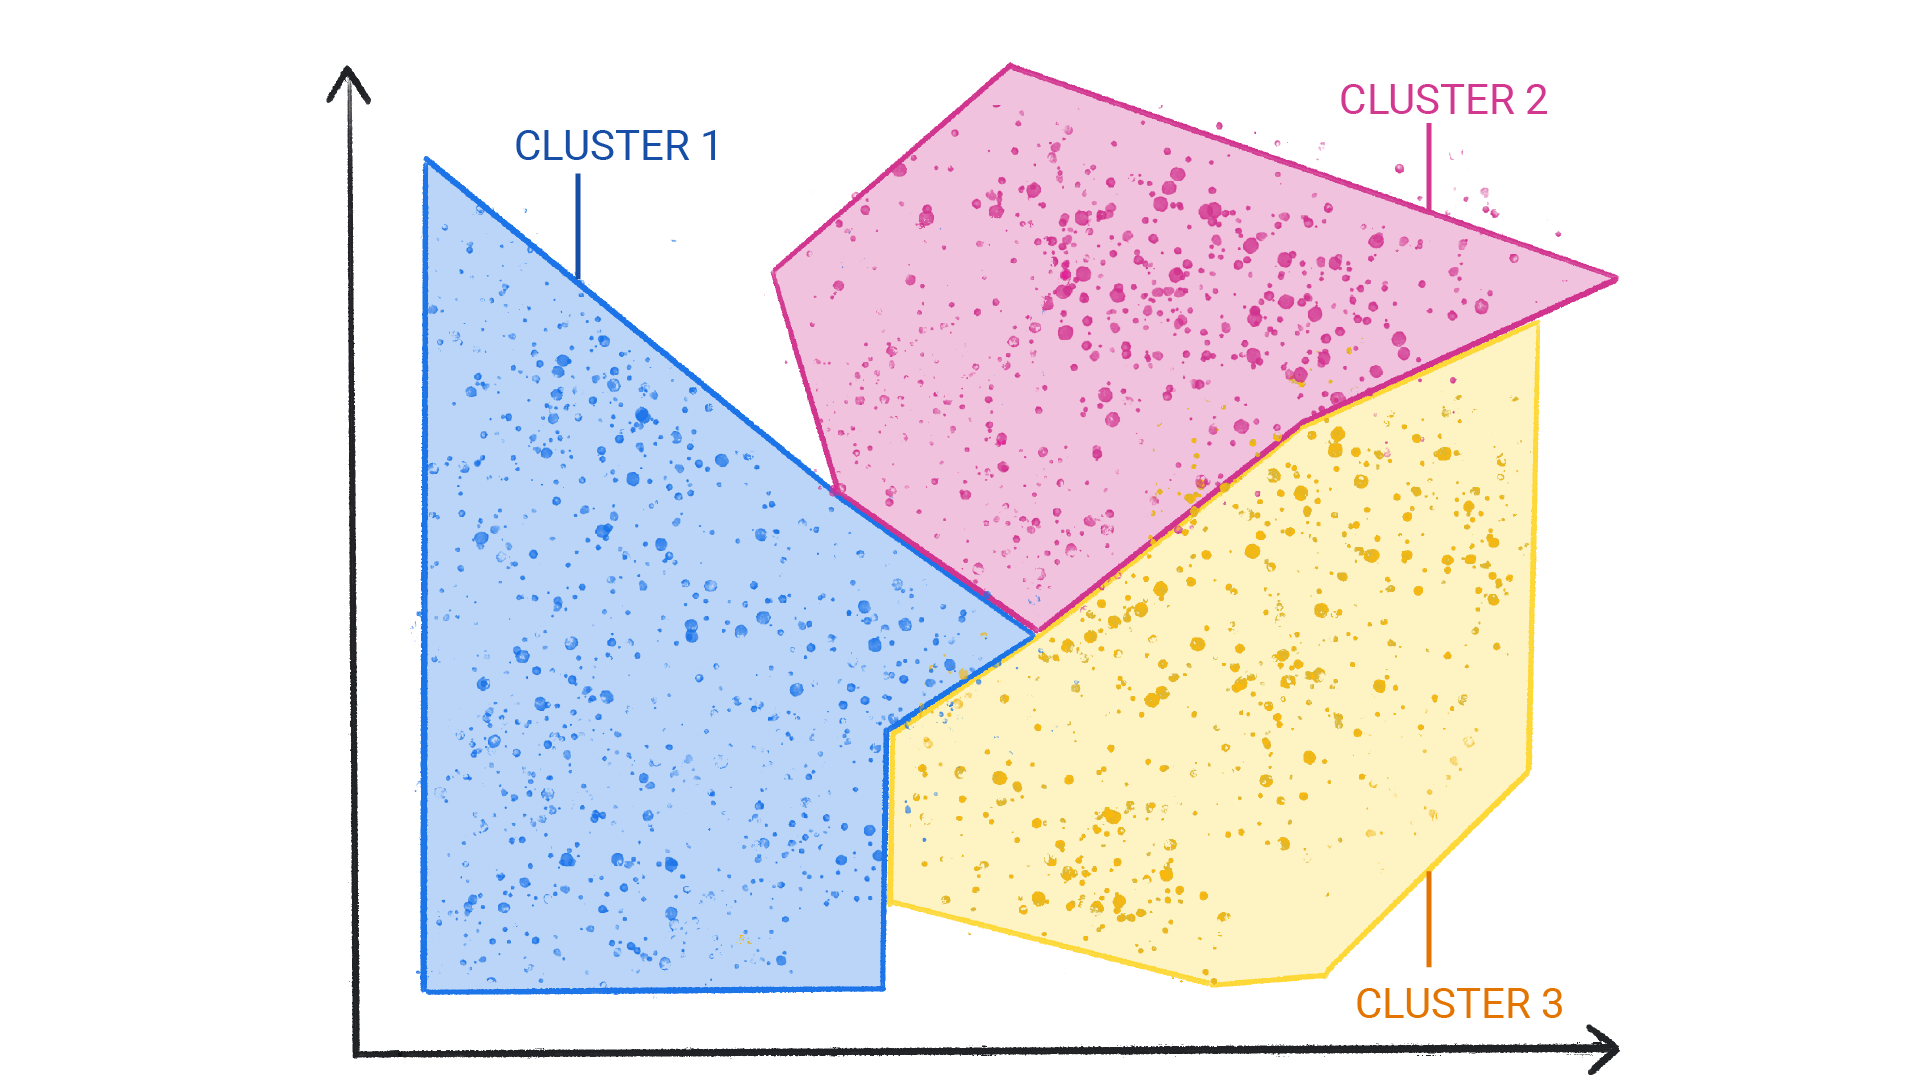 صورة تعرض نقاطًا ملونة في مجموعات عنقودية داخل شكل وتحد بعضها البعض.